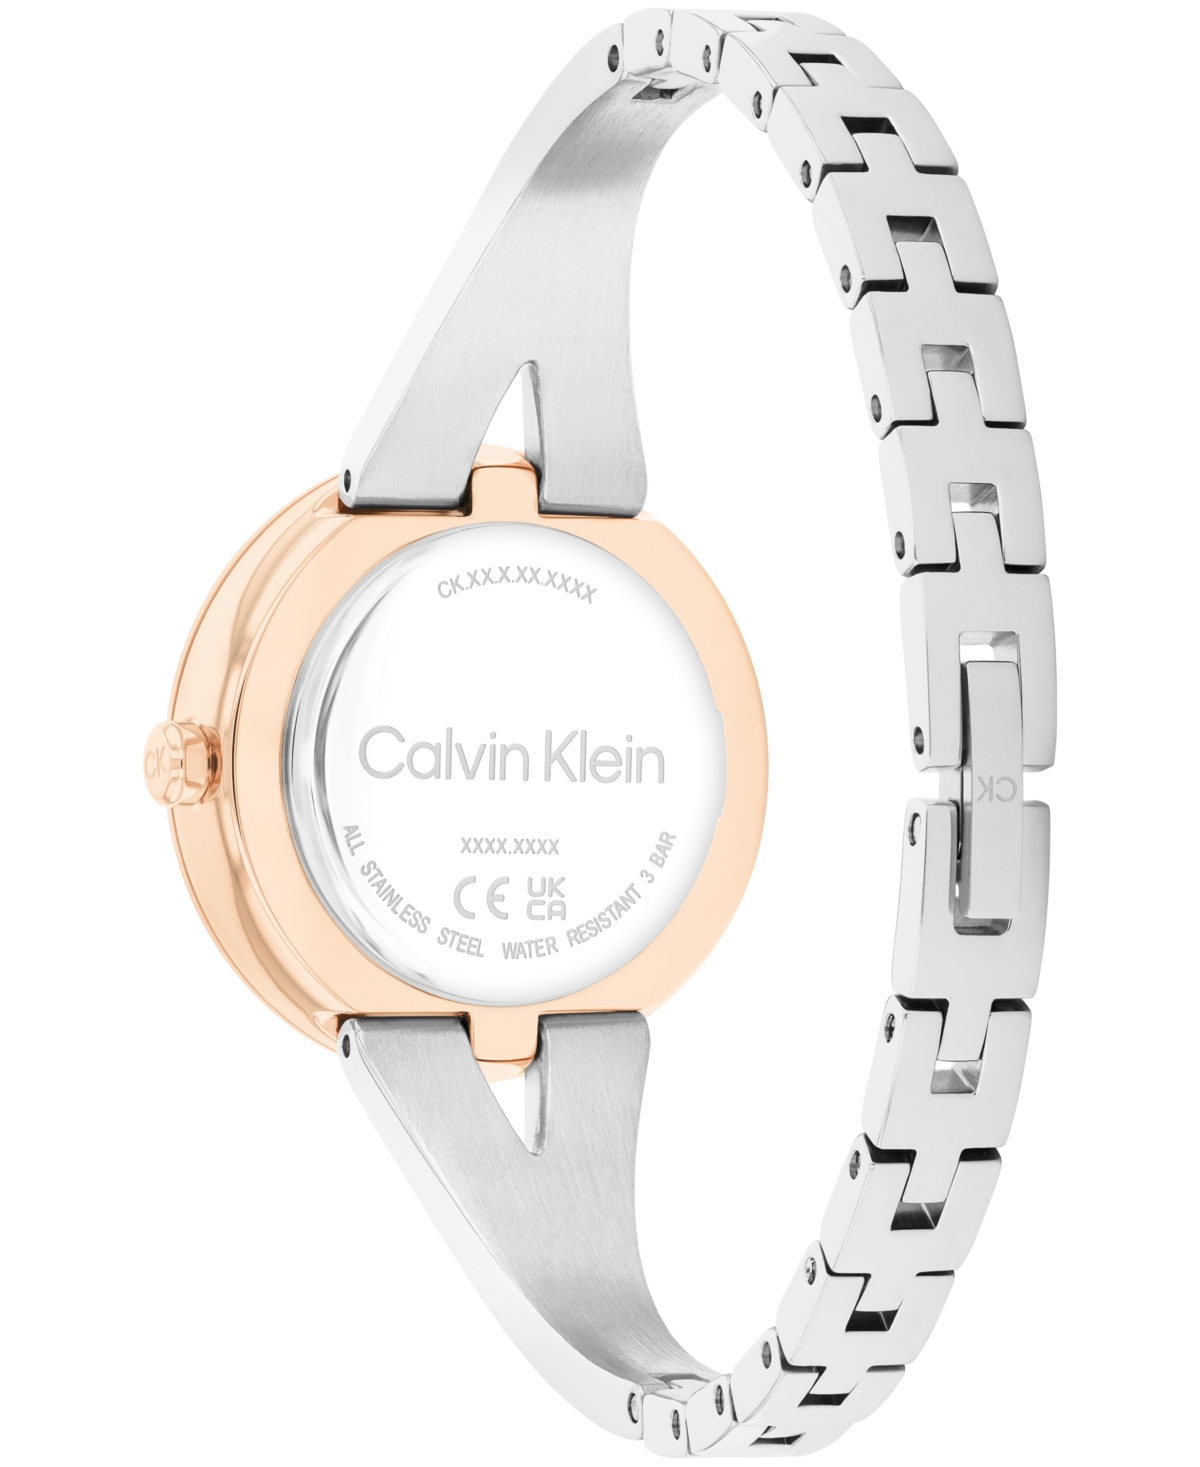 Shop Calvin Klein Women's Joyful Two-tone Stainless Steel Bangle Bracelet Watch 30mm